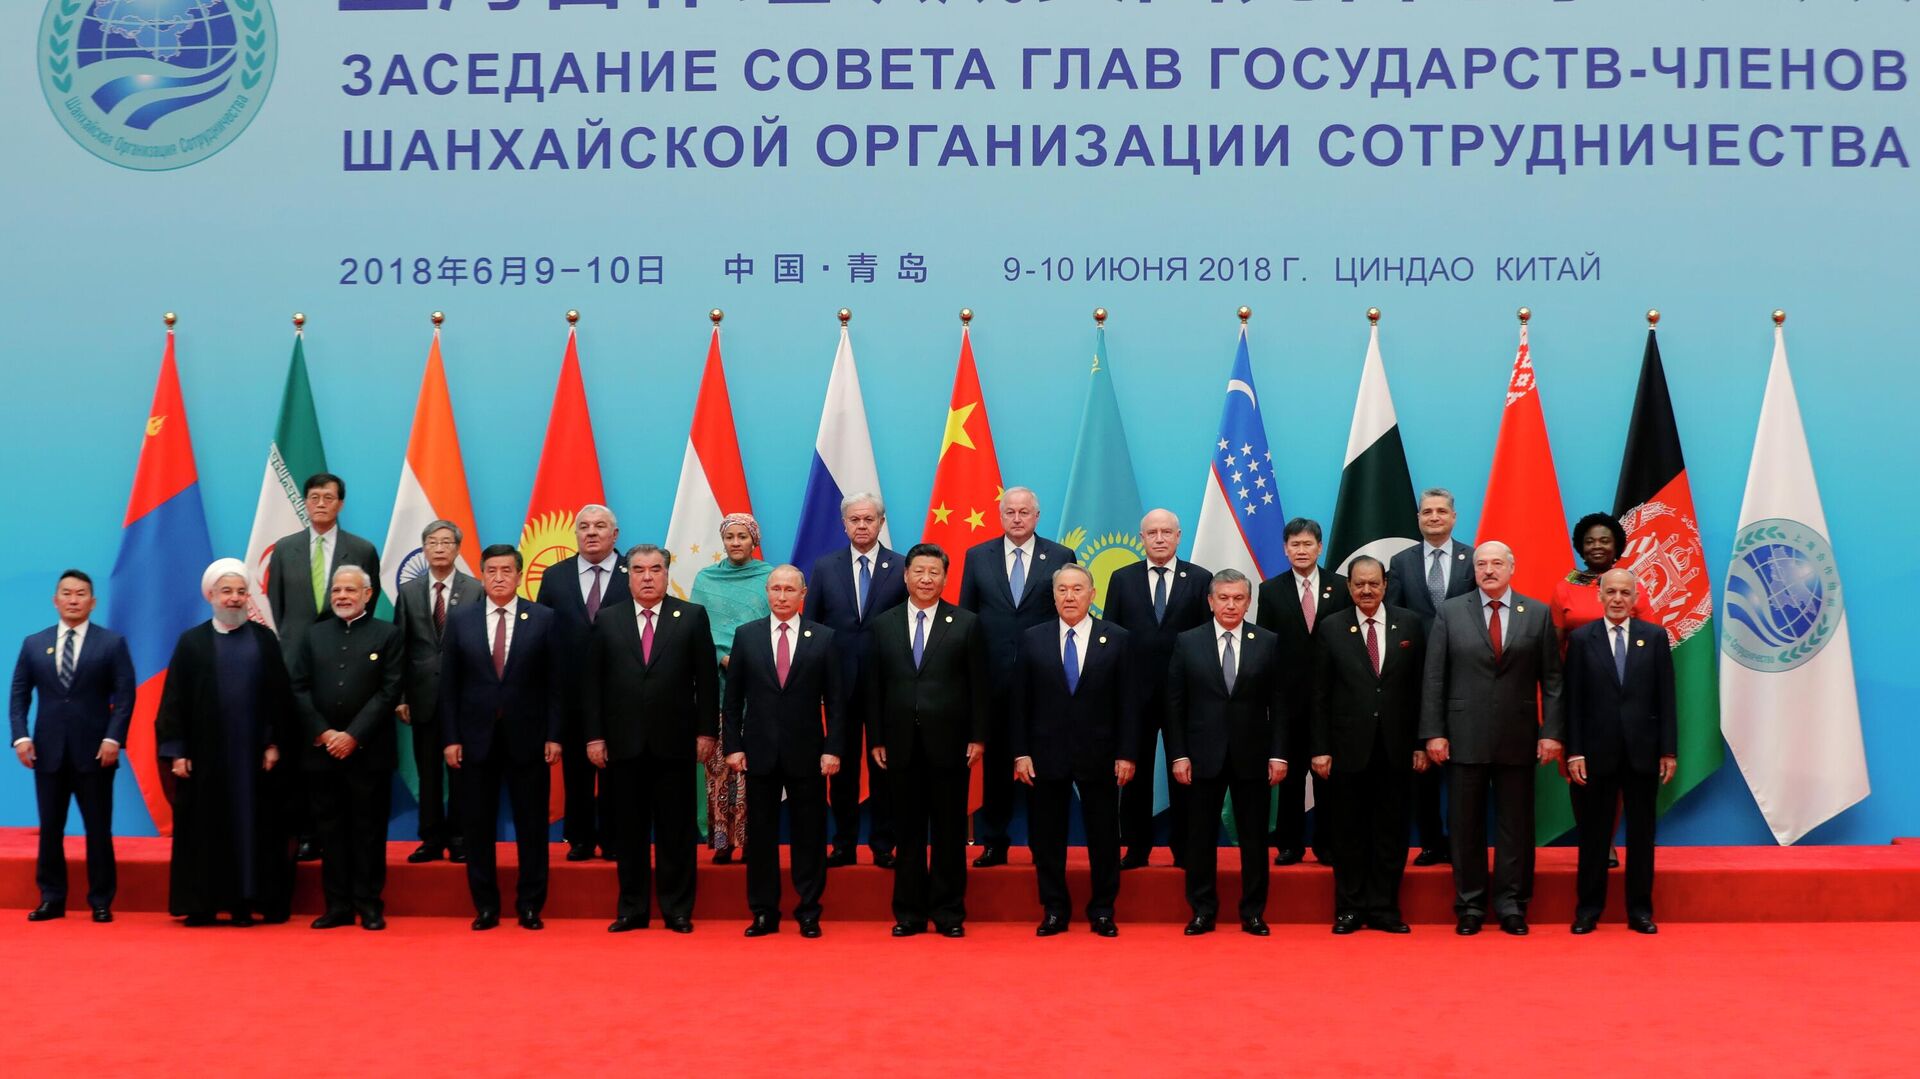 Uzbekistan Leadership Summit